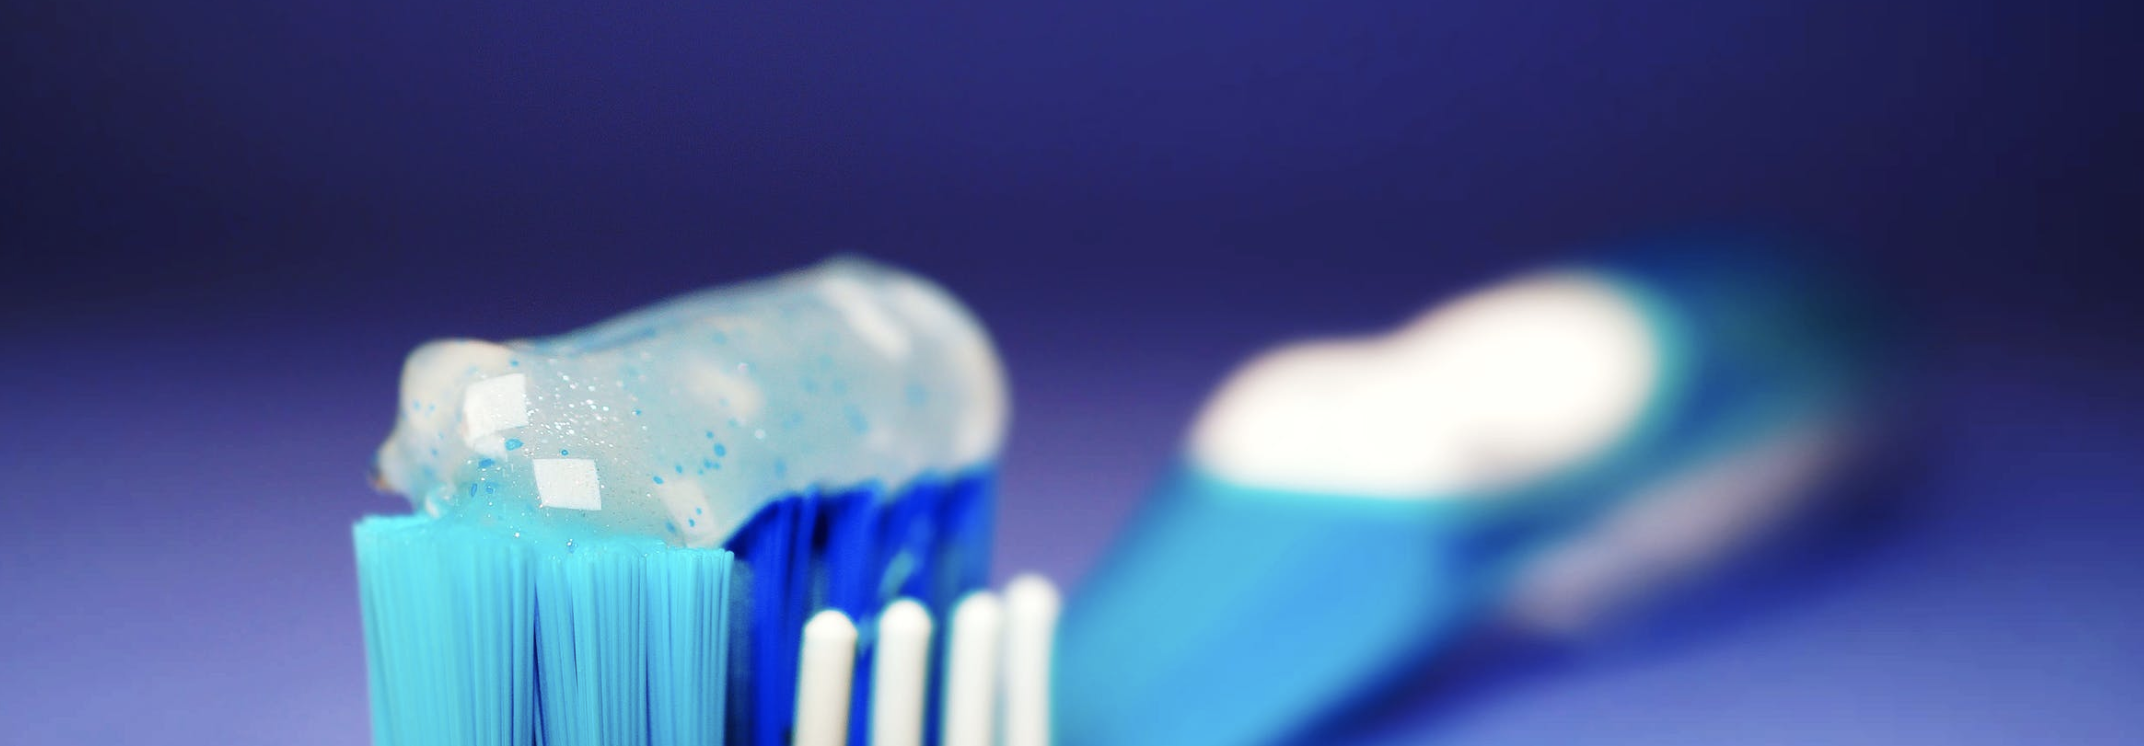 Elektrische tandenborstels: de nieuwste functies